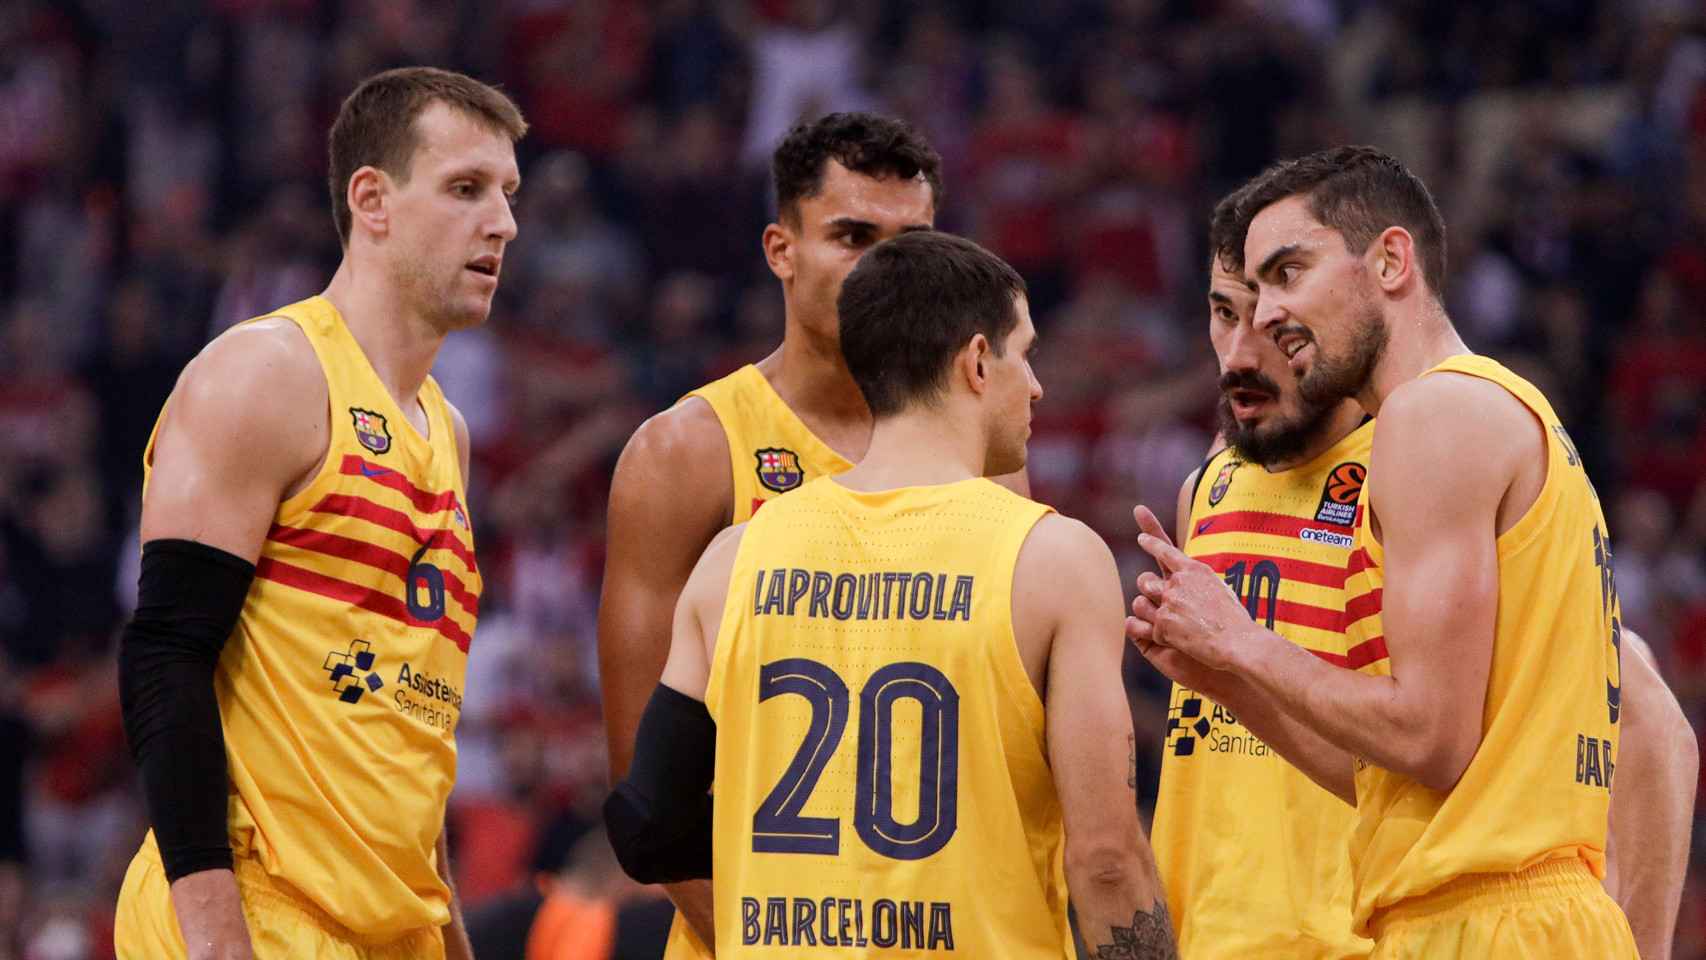 El Barça de basket recurre a la épica para conquistar El Pireo